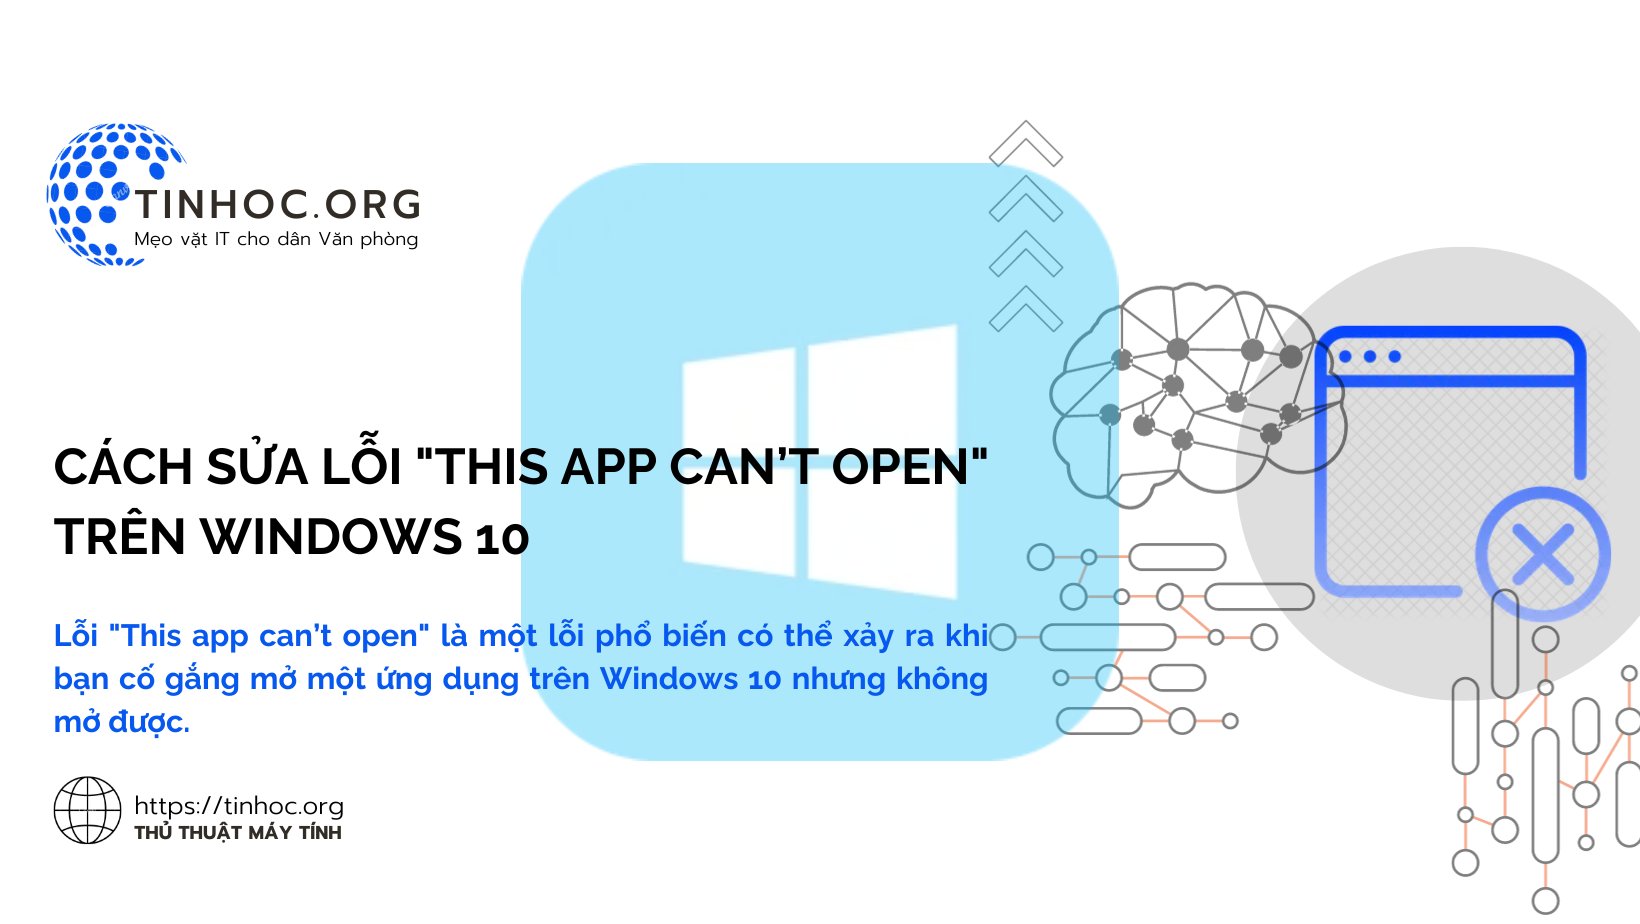 Cách sửa lỗi "This app can’t open" trên Windows 10